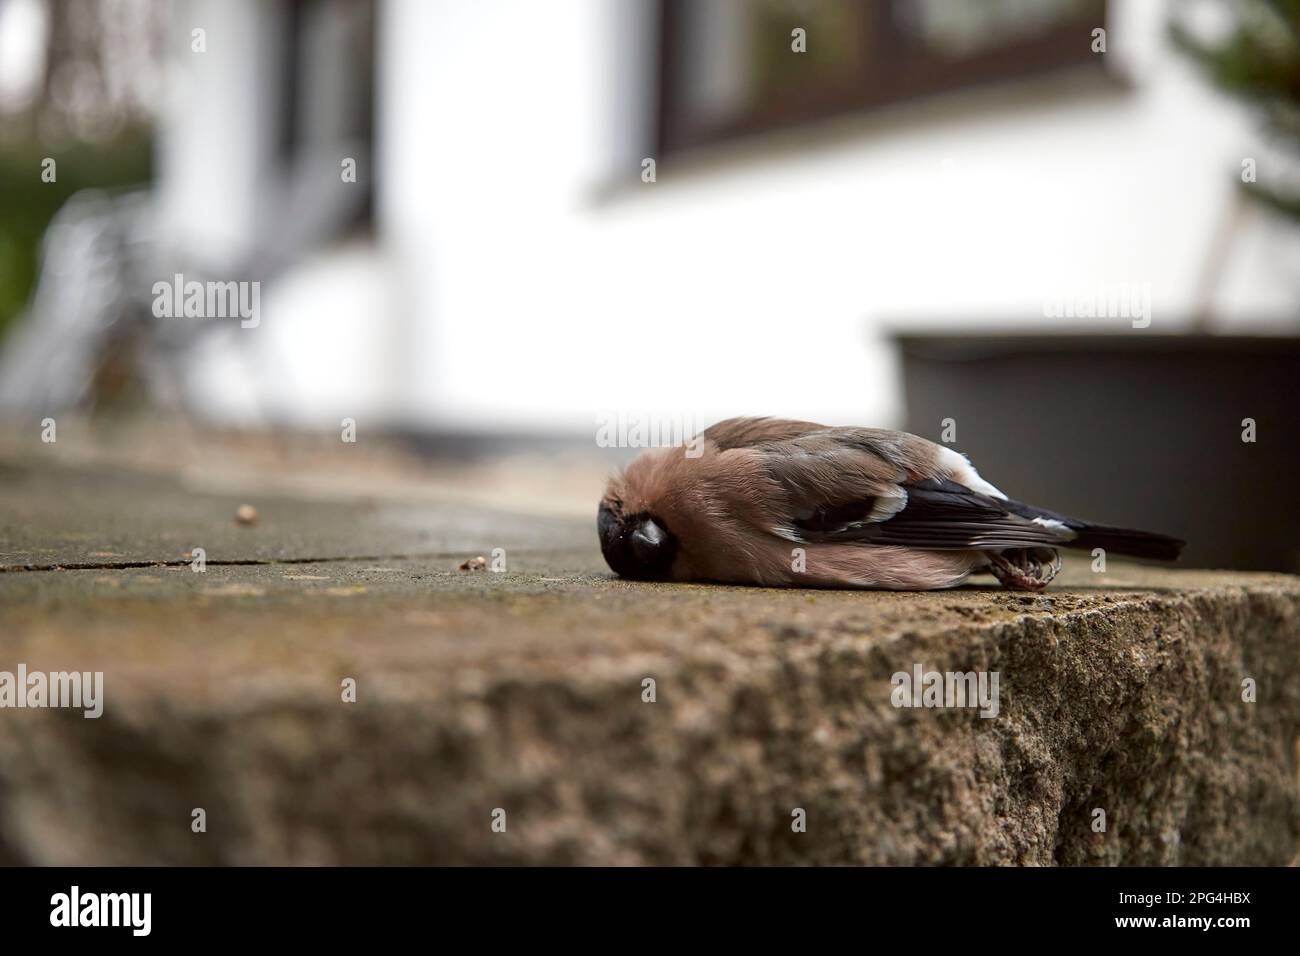 songbird mort sur le sol devant une fenêtre de maison. Symbole pour les oiseaux qui meurent en volant devant les vitres Banque D'Images